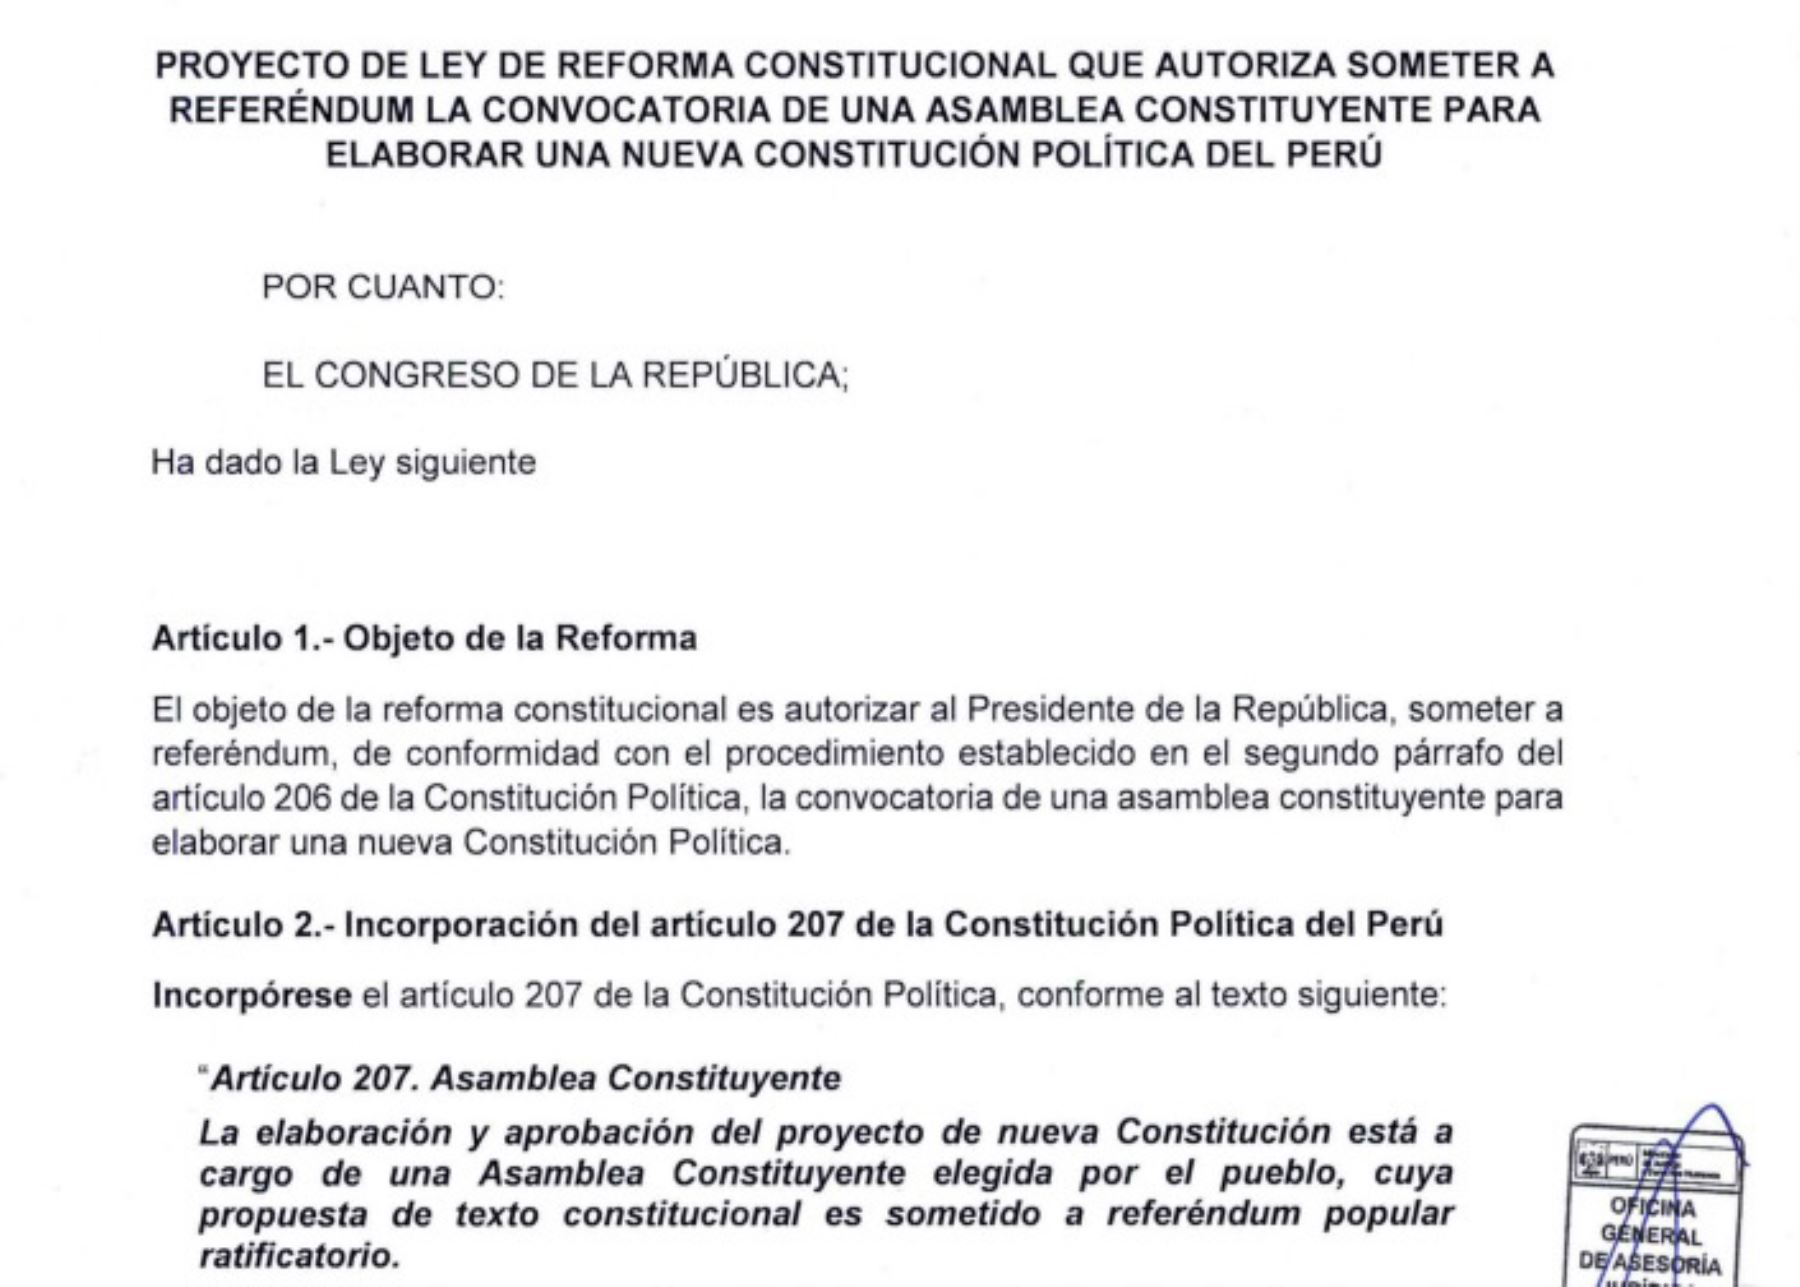 Asamblea Constituyente: los argumentos empleados para archivar proyecto de referéndum